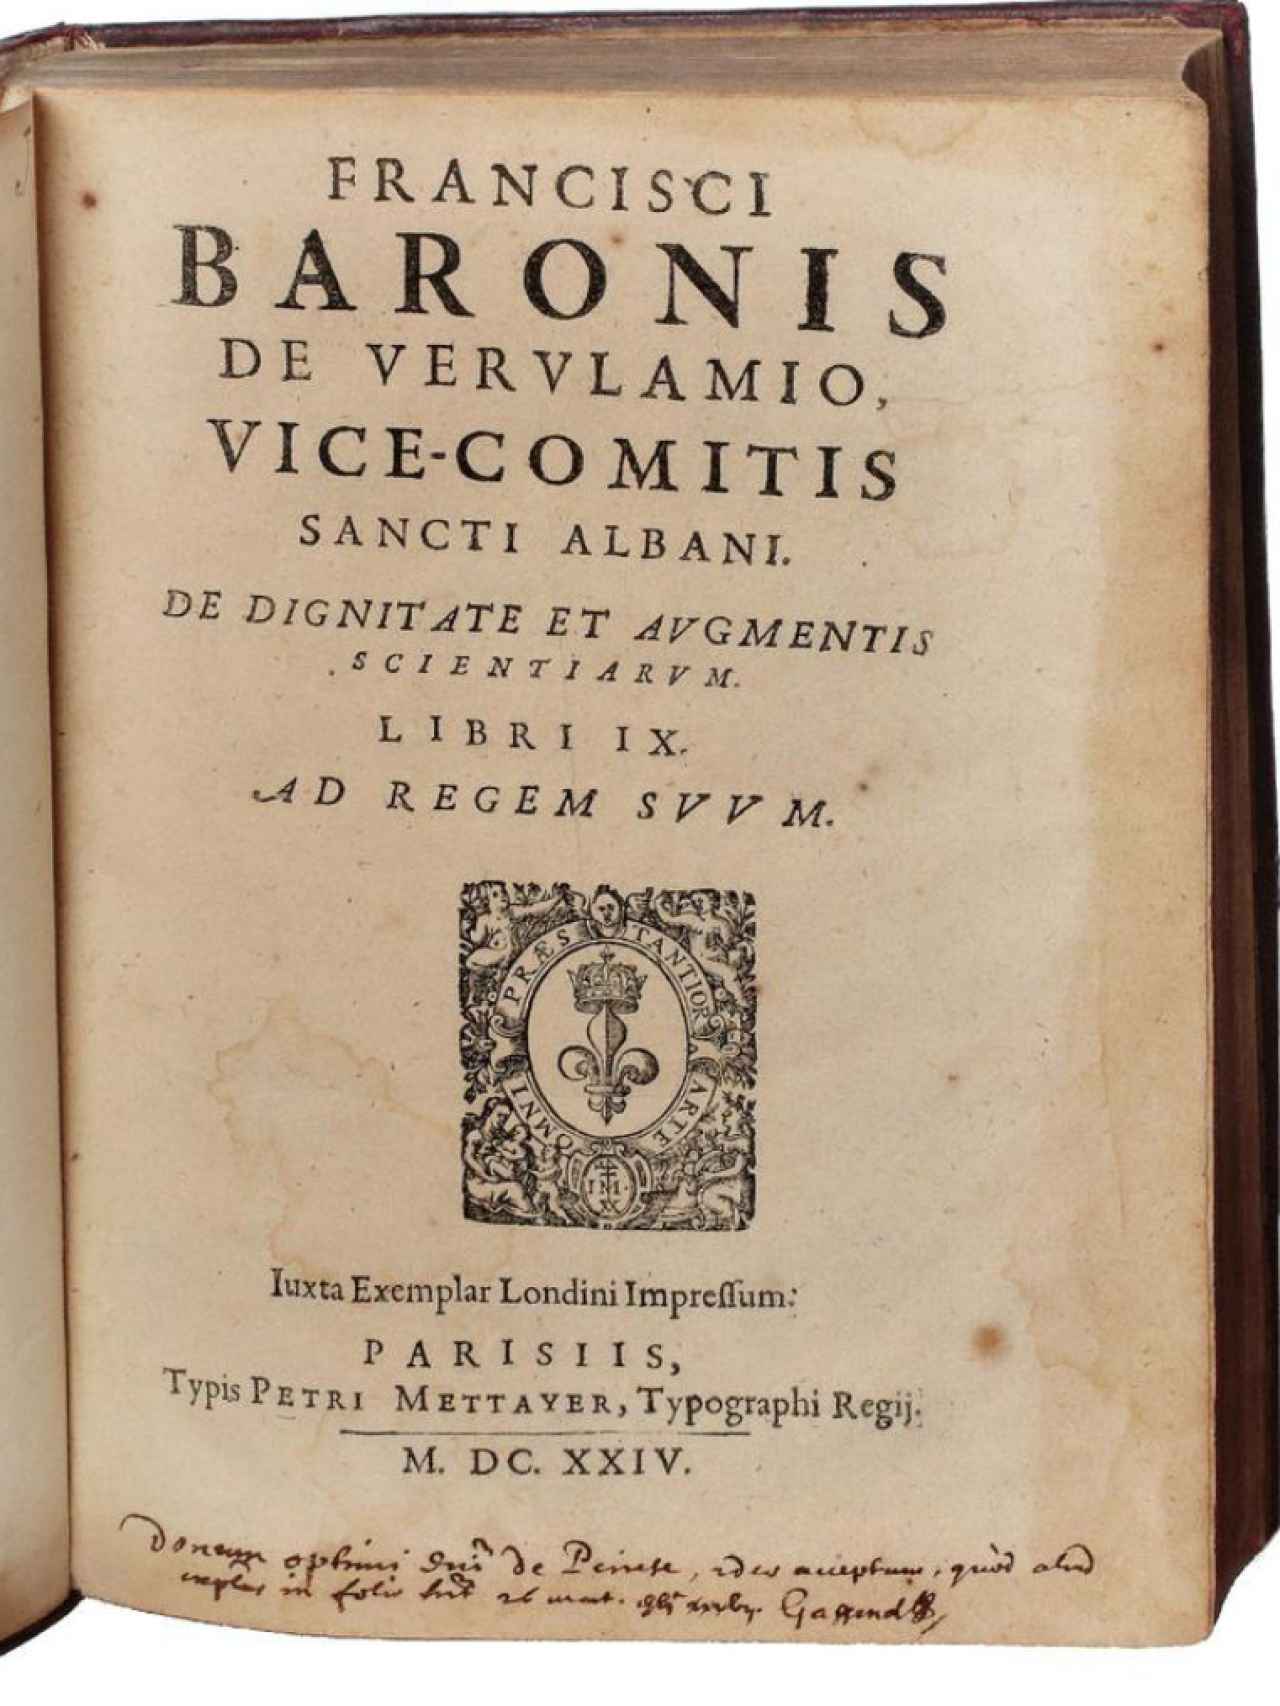 'De dignitate et augmentis scientiarum' (1624)